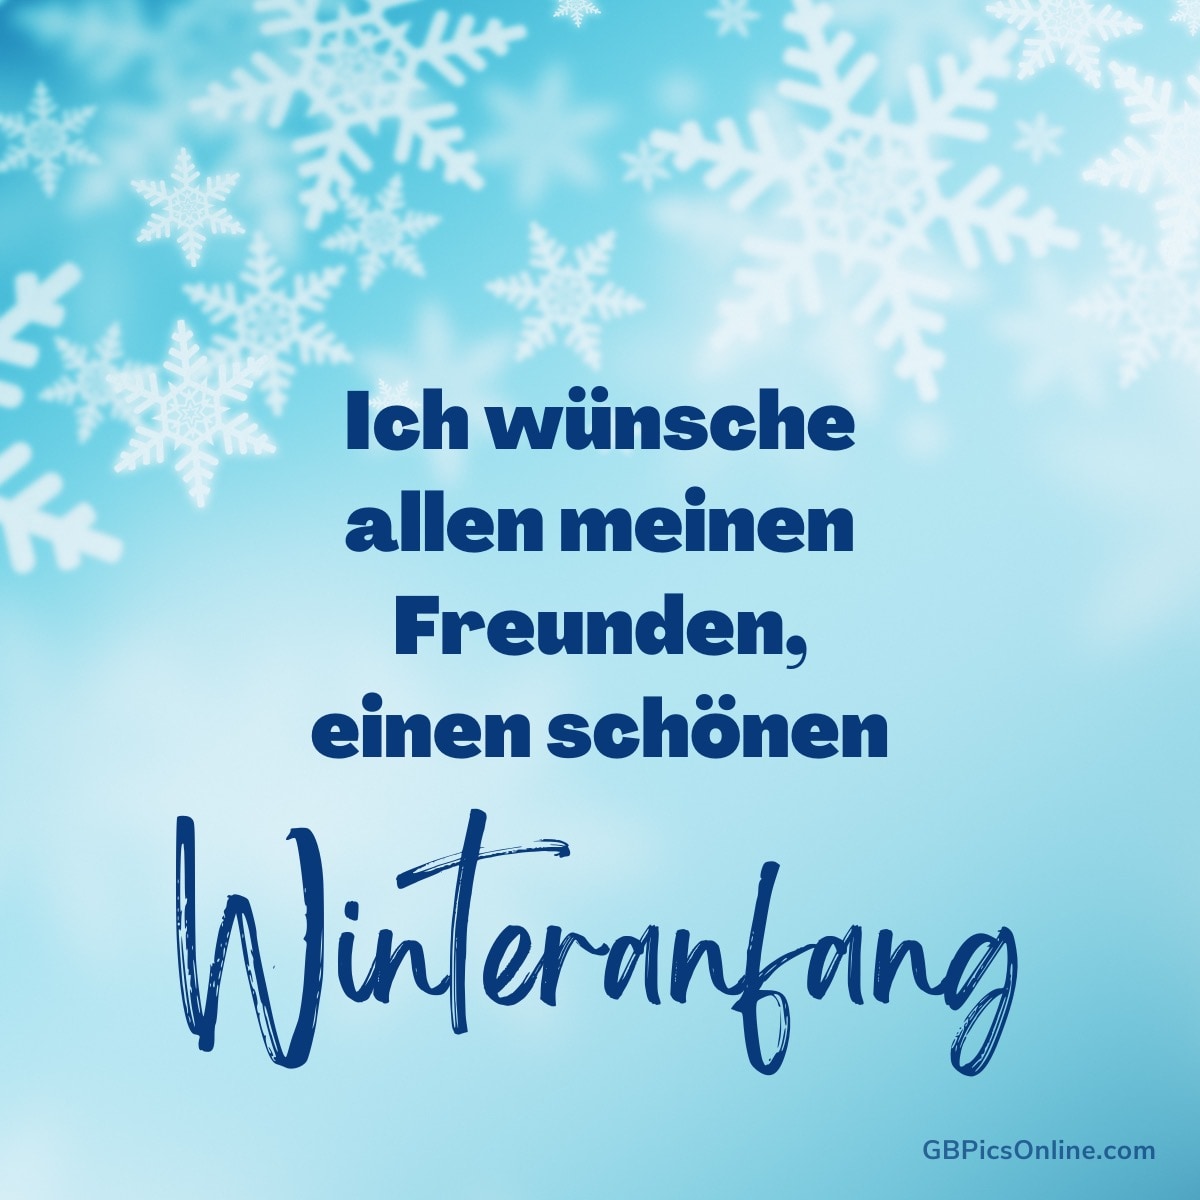 Ein blauer Hintergrund mit Schneeflocken und Wünschen für einen schönen Winteranfang